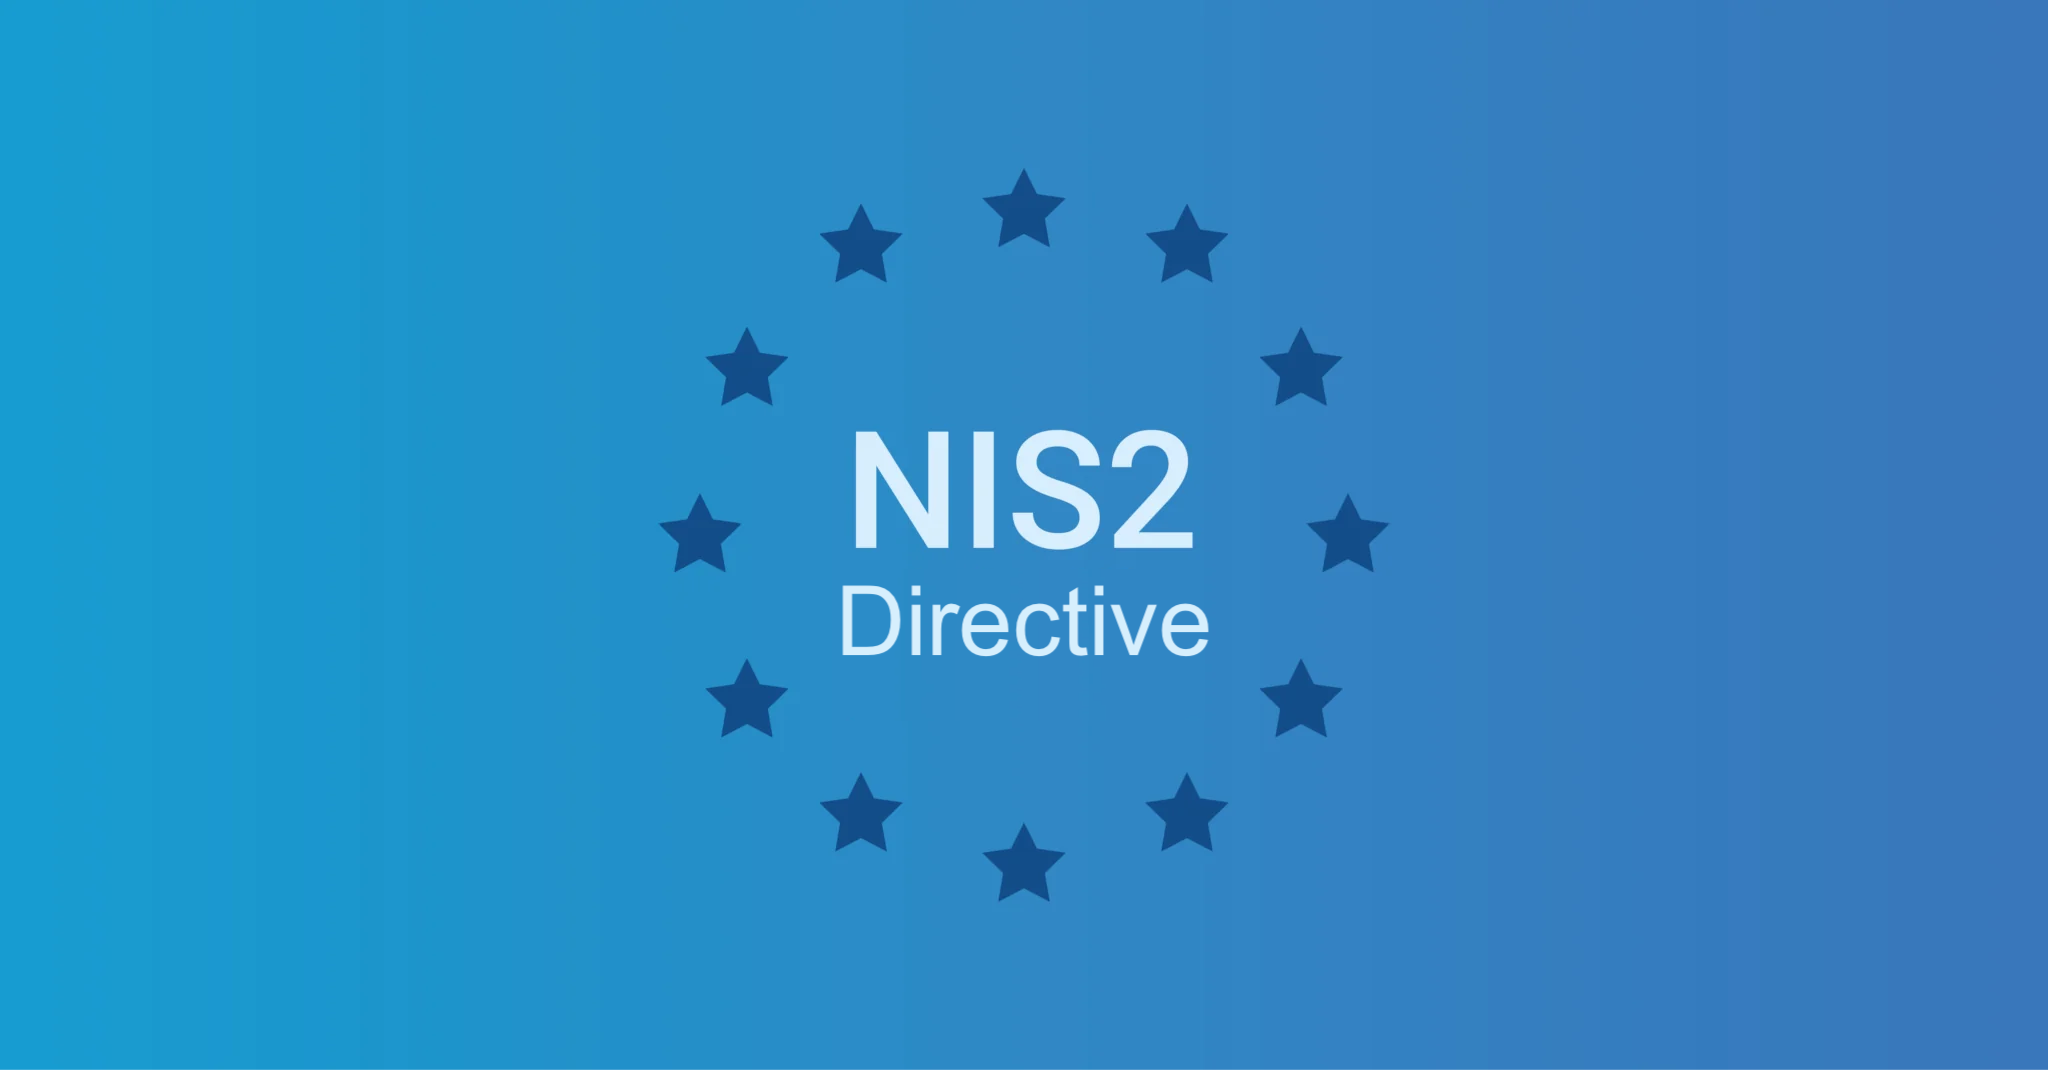 L’intérêt de mettre en place une solution IAM pour être en conformité avec la directive NIS2